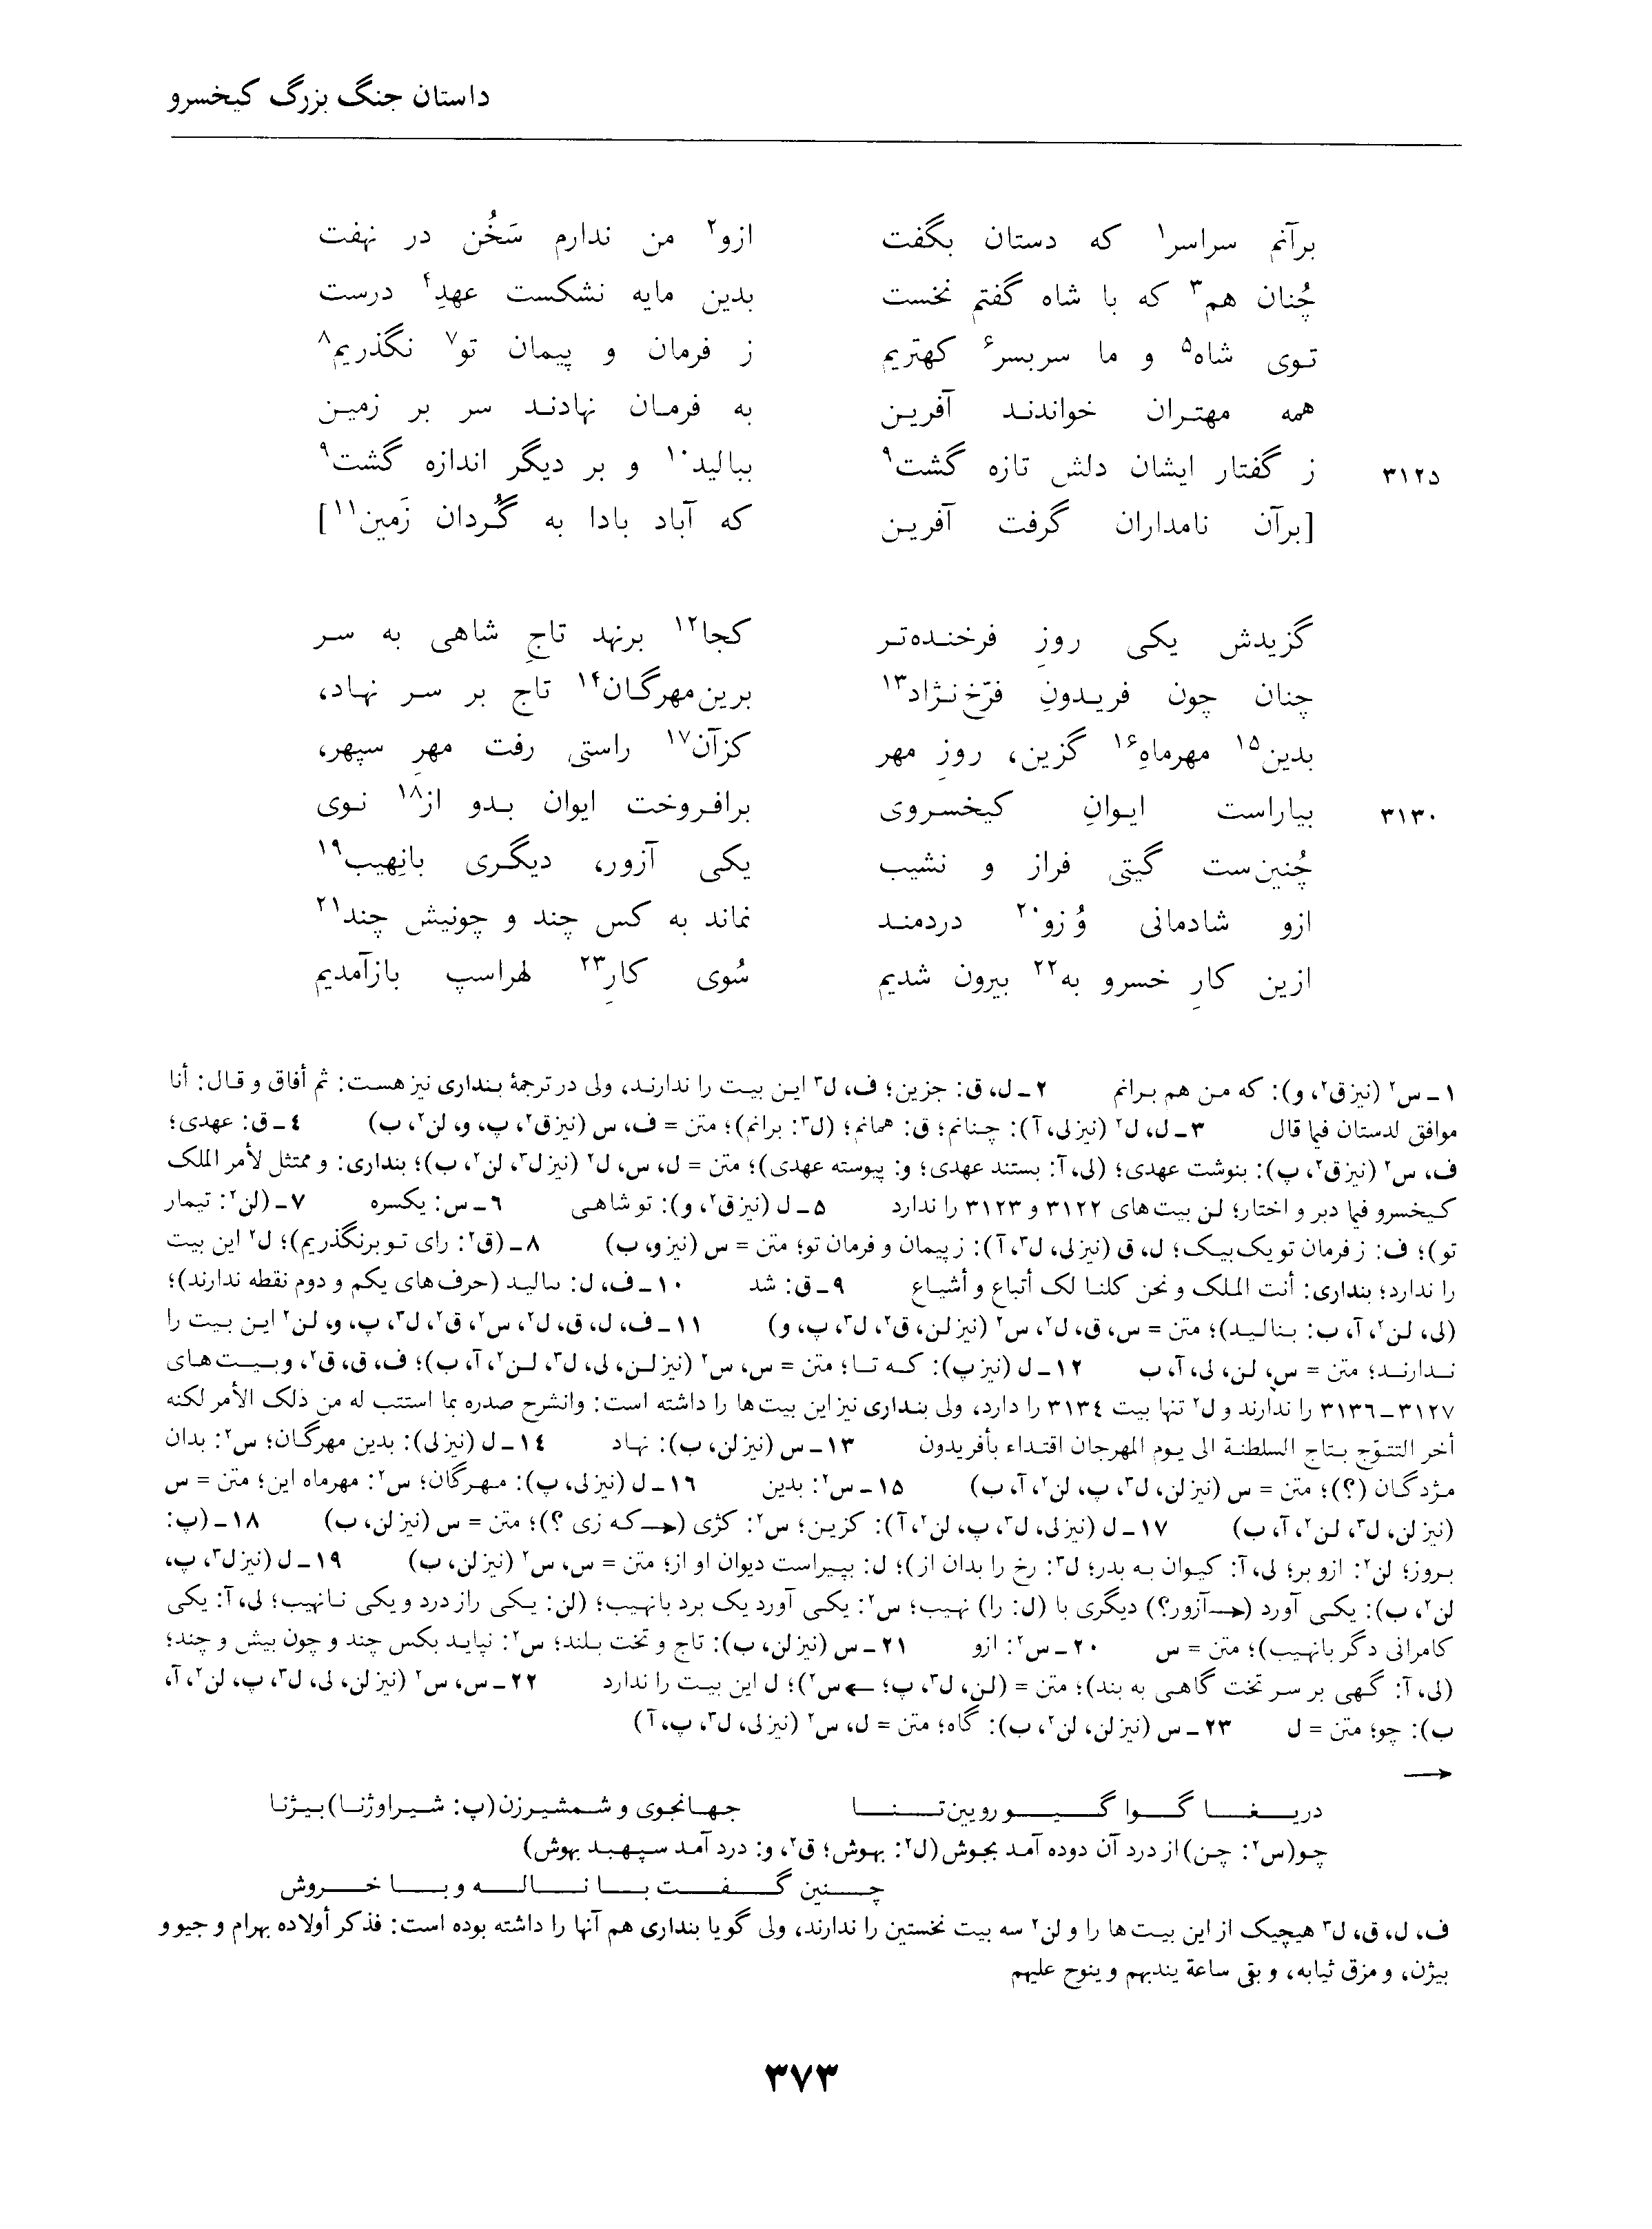 vol. 4, p. 373